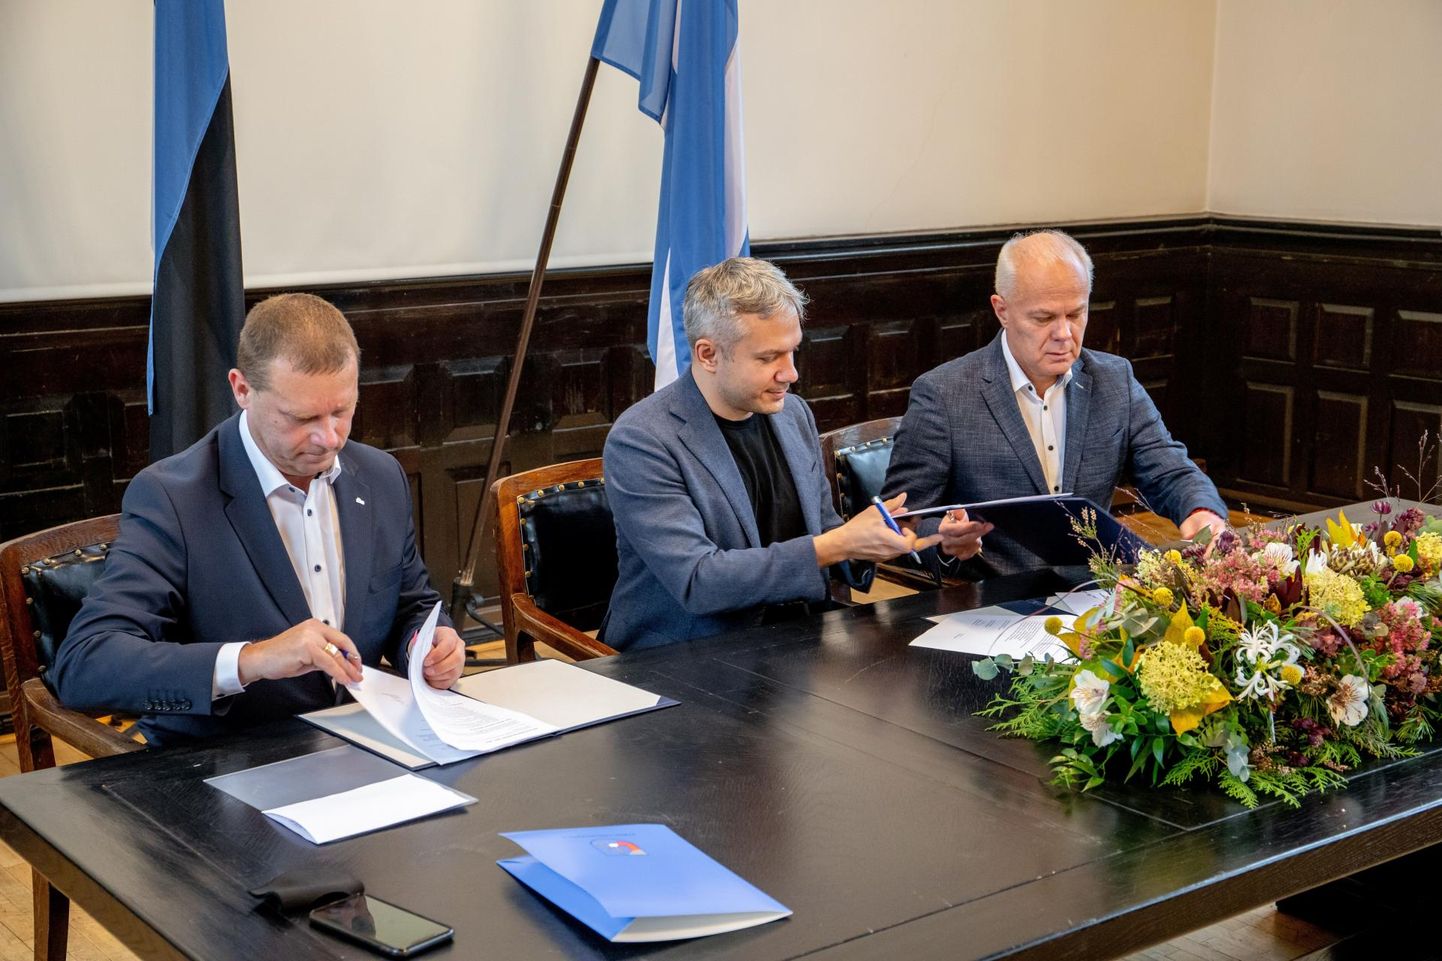 Romek Kosenkranius (Pärnu Ühendab), Andrei Korobeinik (Keskerakond) ja Toomas Kivimägi (Reformierakond) allkirjastasid koalitsioonilepingu 28. oktoobril.